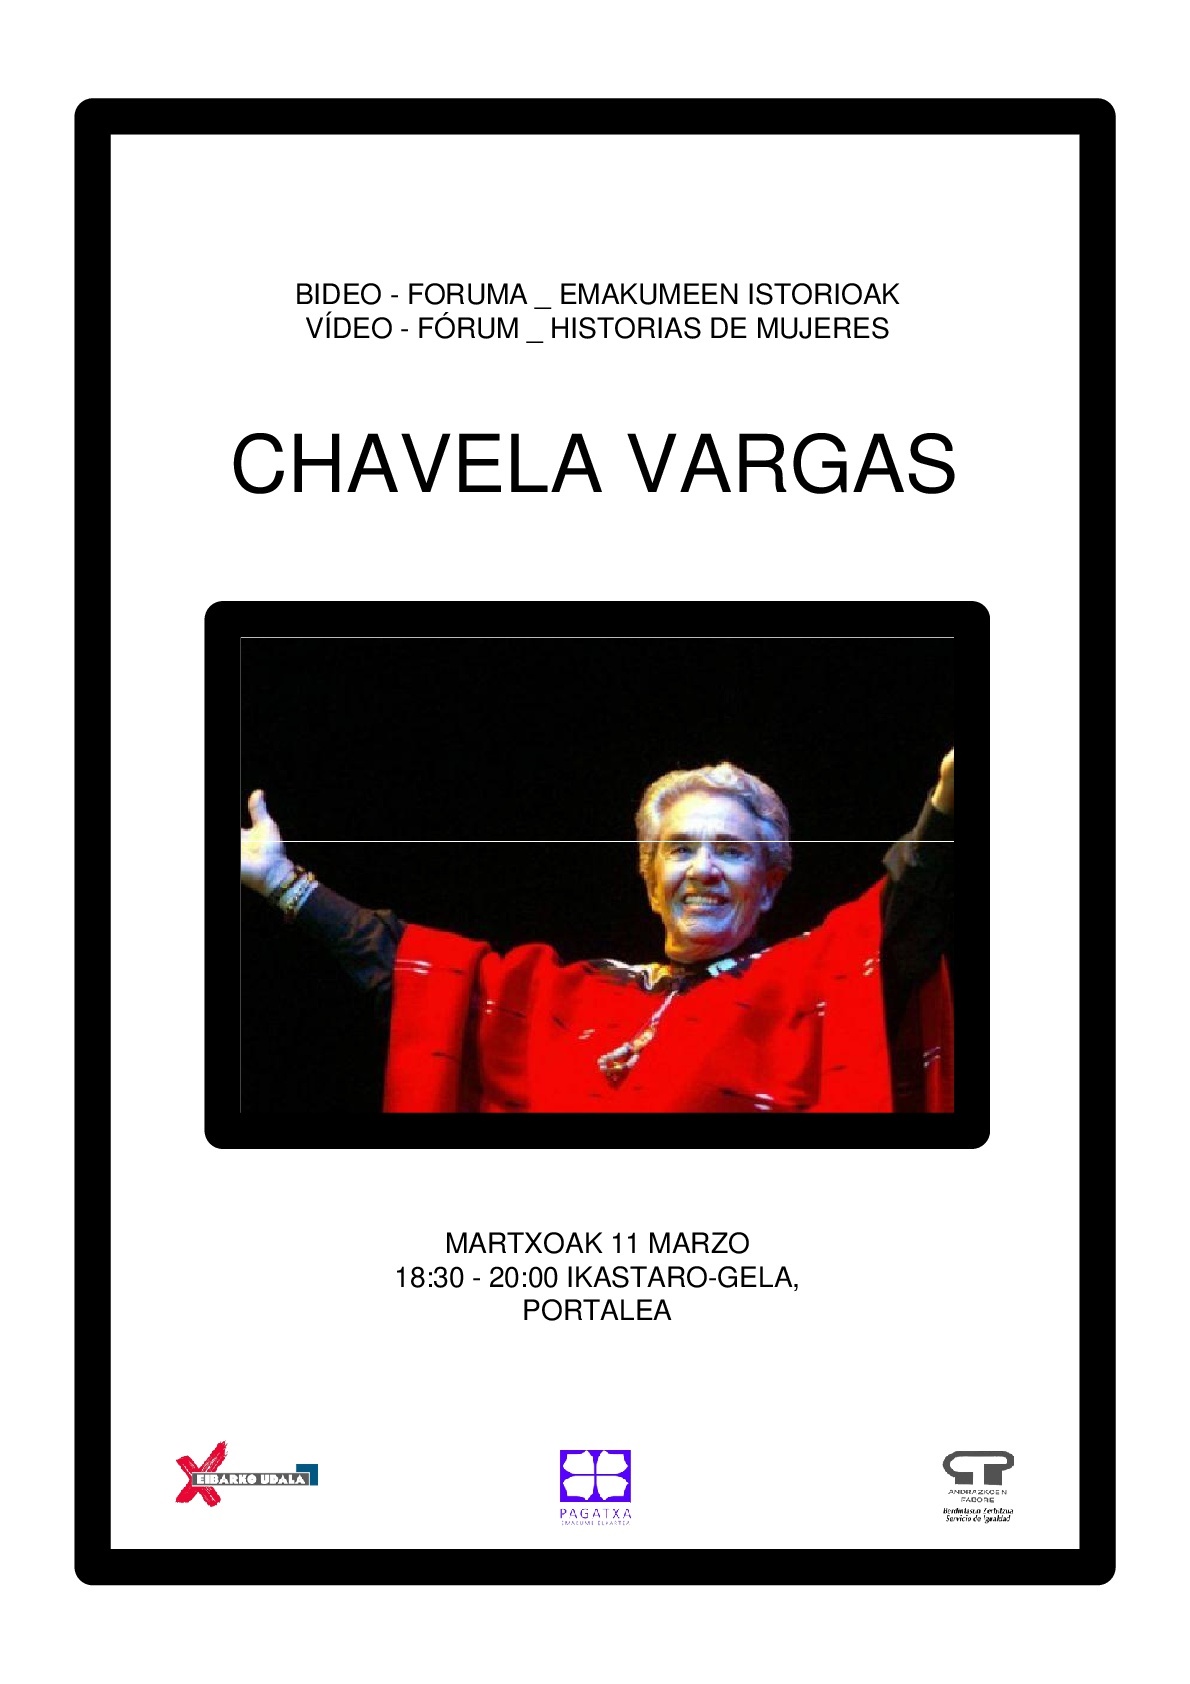 Video Forum Historias de mujeres: Chavela Vargas 